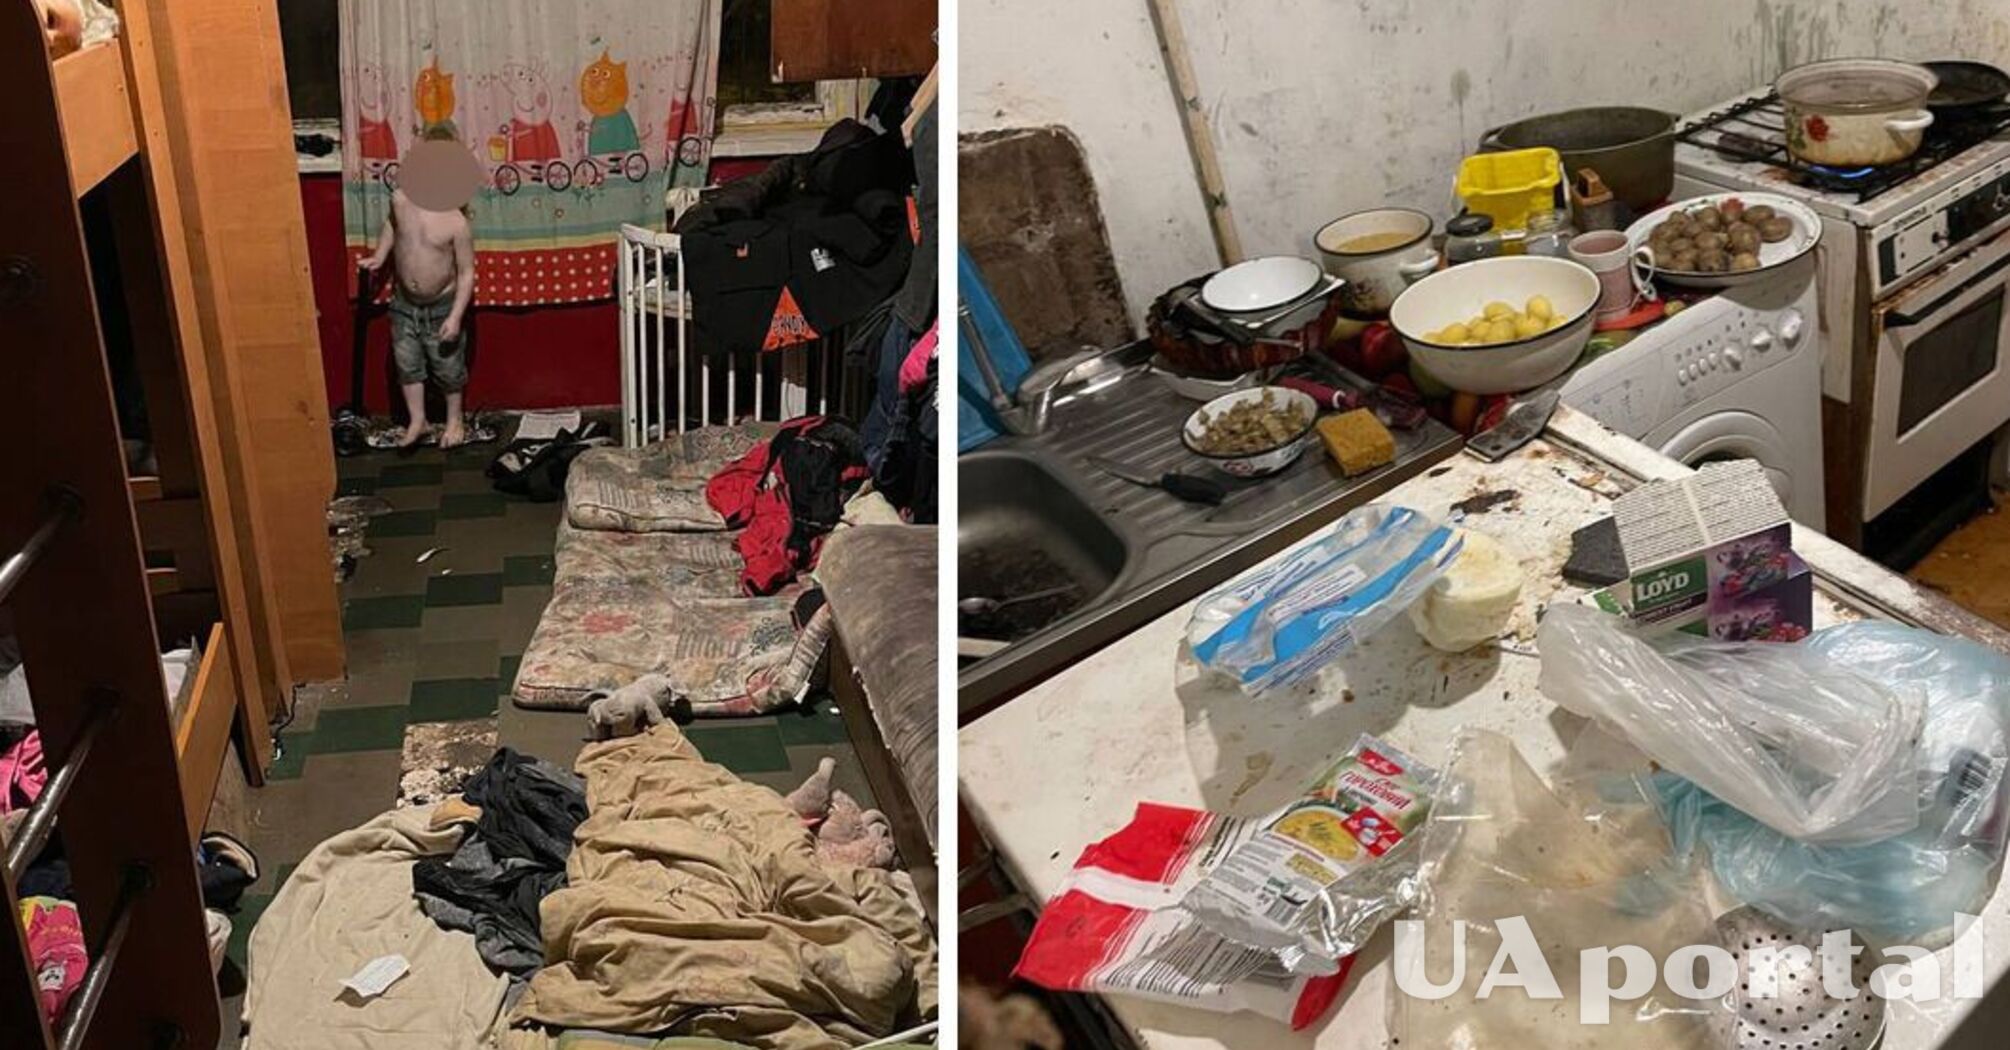 Их душили, спали они на полу не имели нормальной еды: правоохранители в Днепре забрали шестерых детей, которые жили в бесчеловечных условиях (фото)